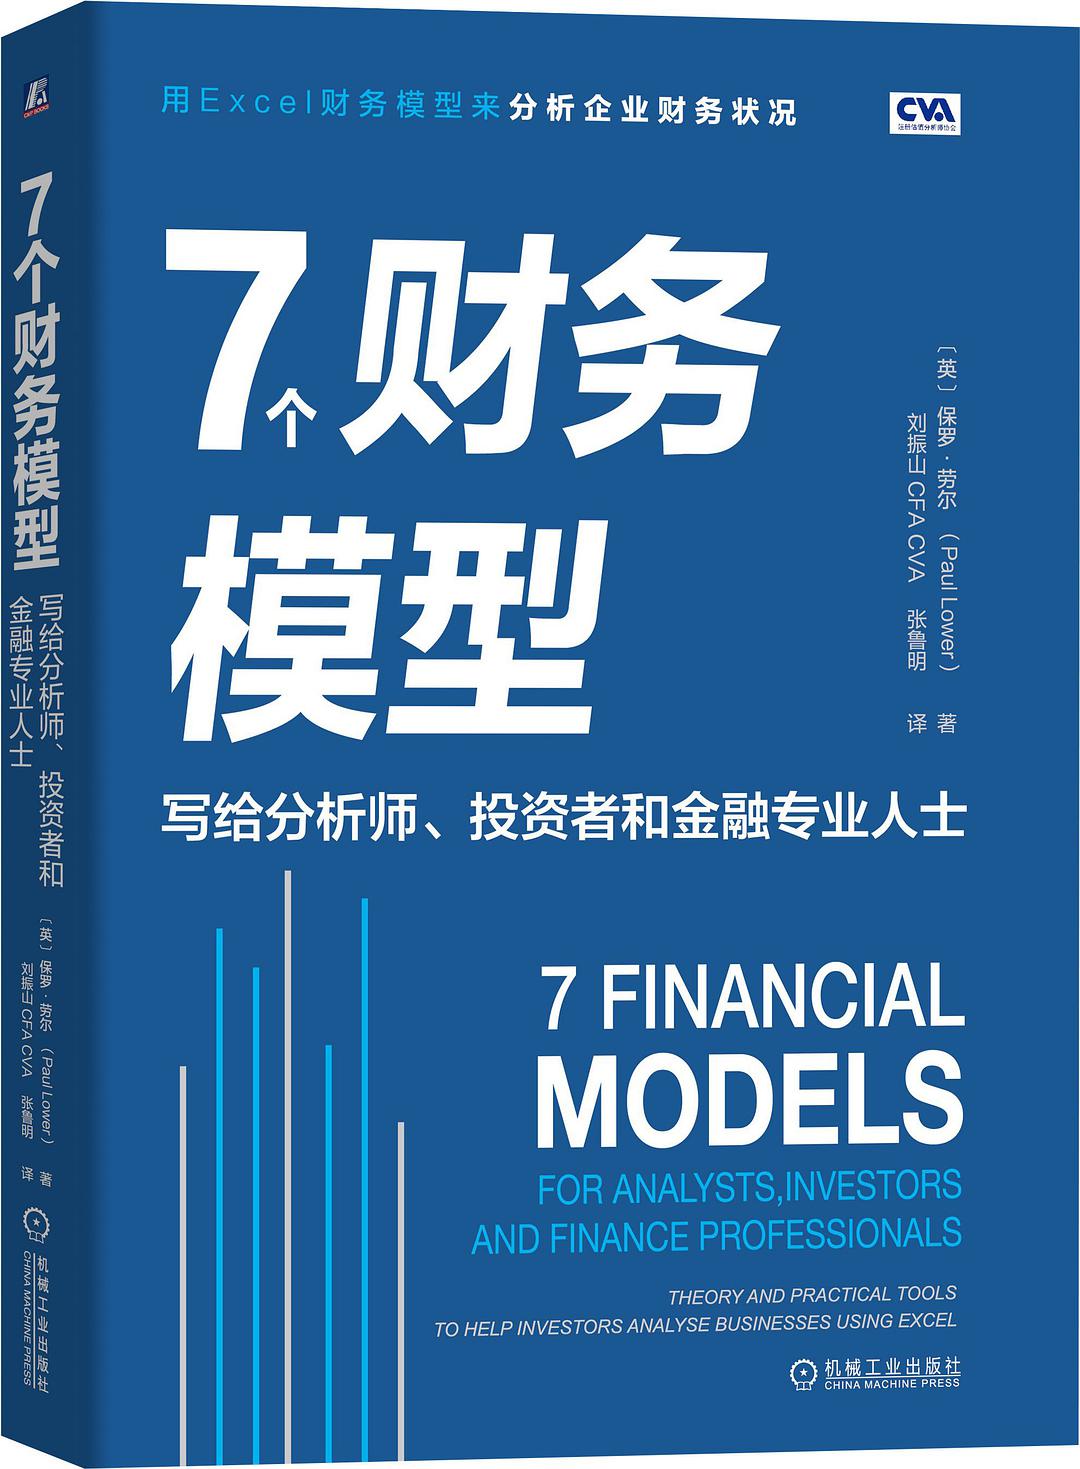 7个财务模型 写给分析师、投资者和金融专业人士 for analysis, investors and finance professionals